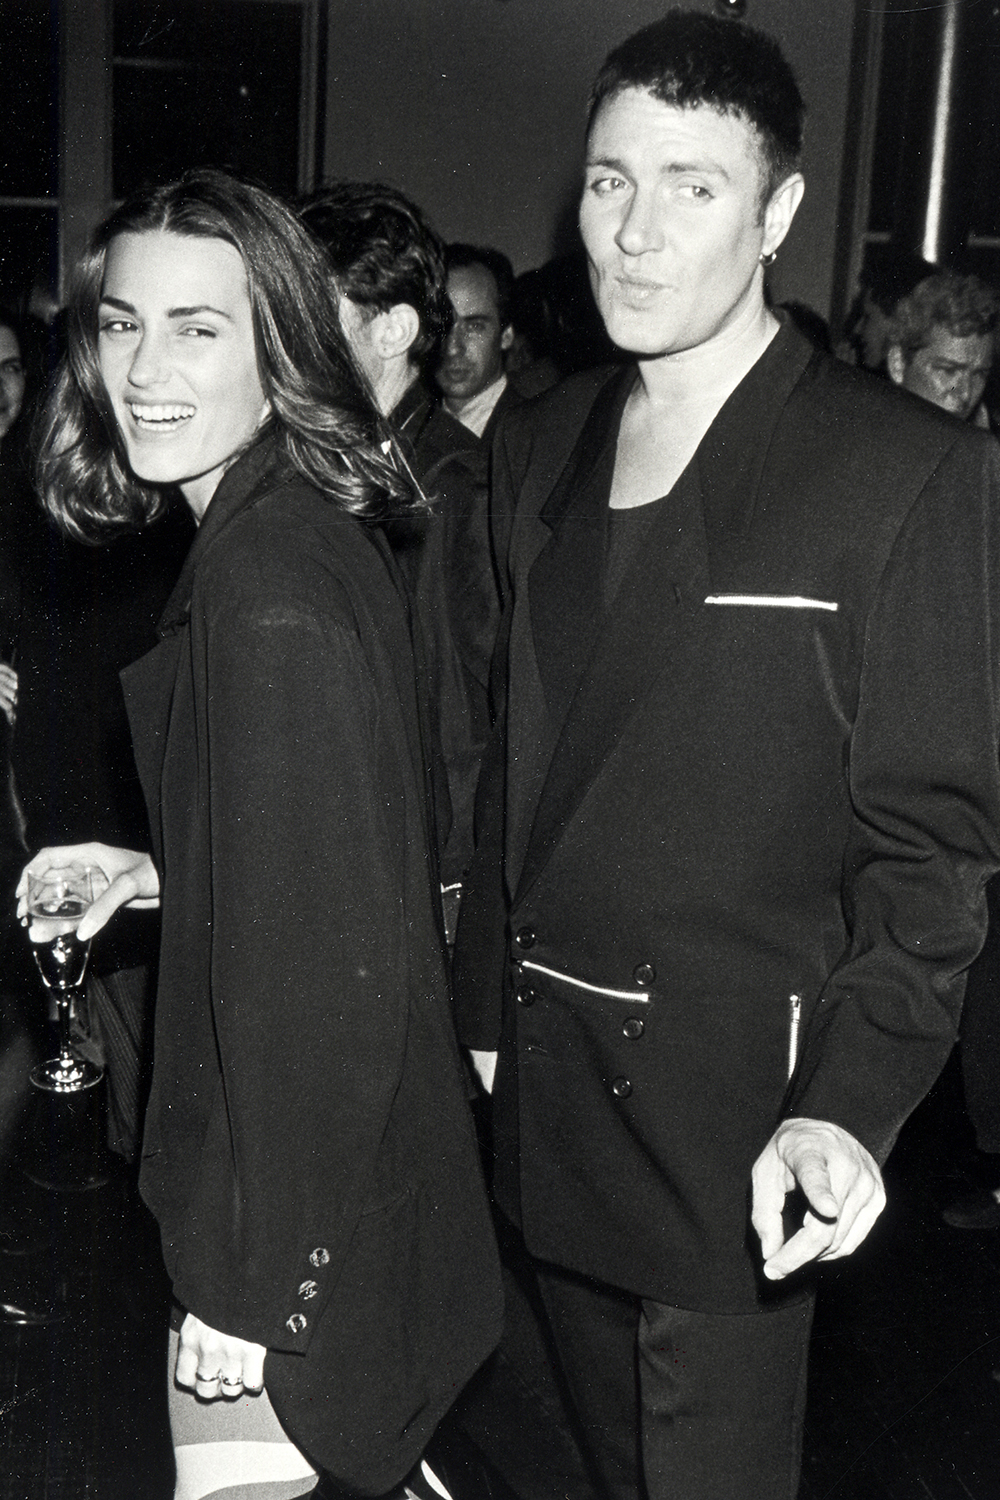 Duran Duran's Simon Le Bon married Yasmin (nee Parvaneh) in 1985.